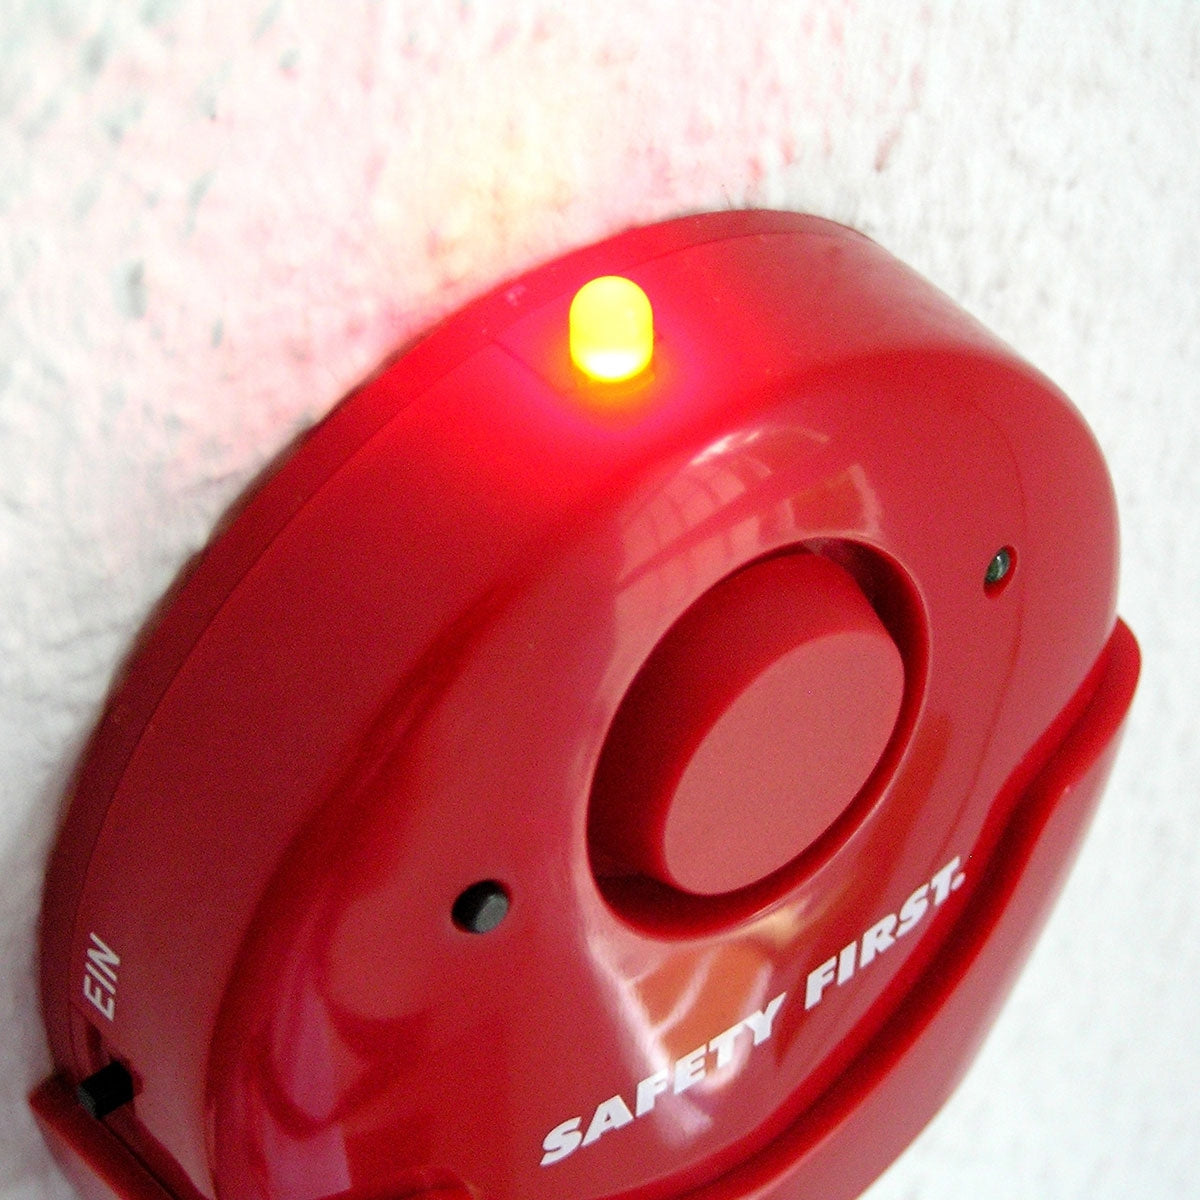 Notfallalarm mit LED-Licht zum Schutz Zuhause